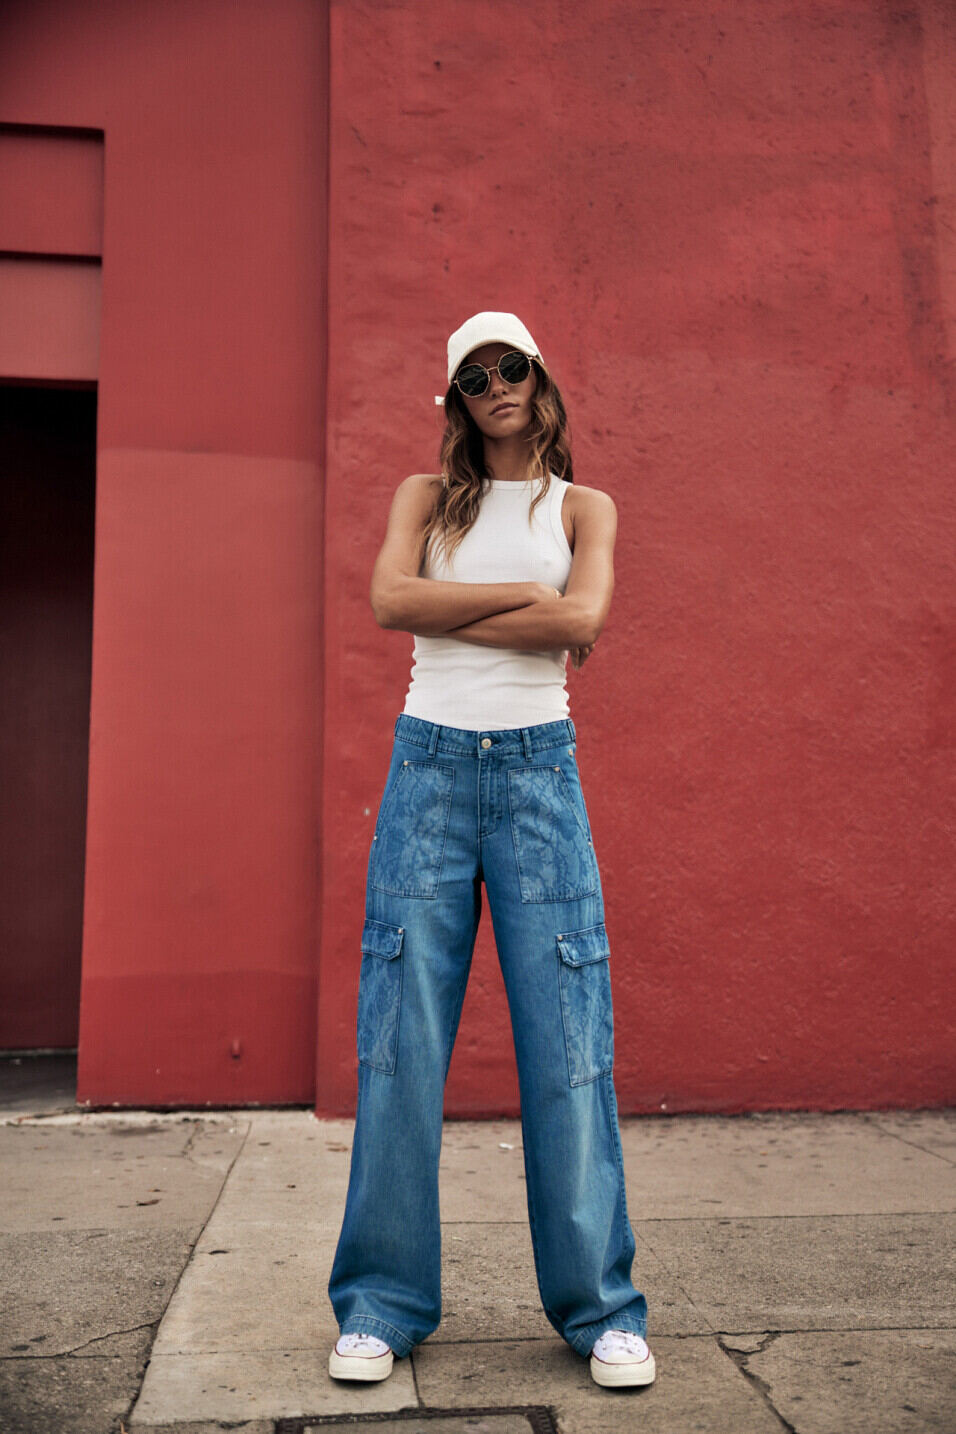 Breite Jeans Woman Moxie Milos | Freeman T. Porter